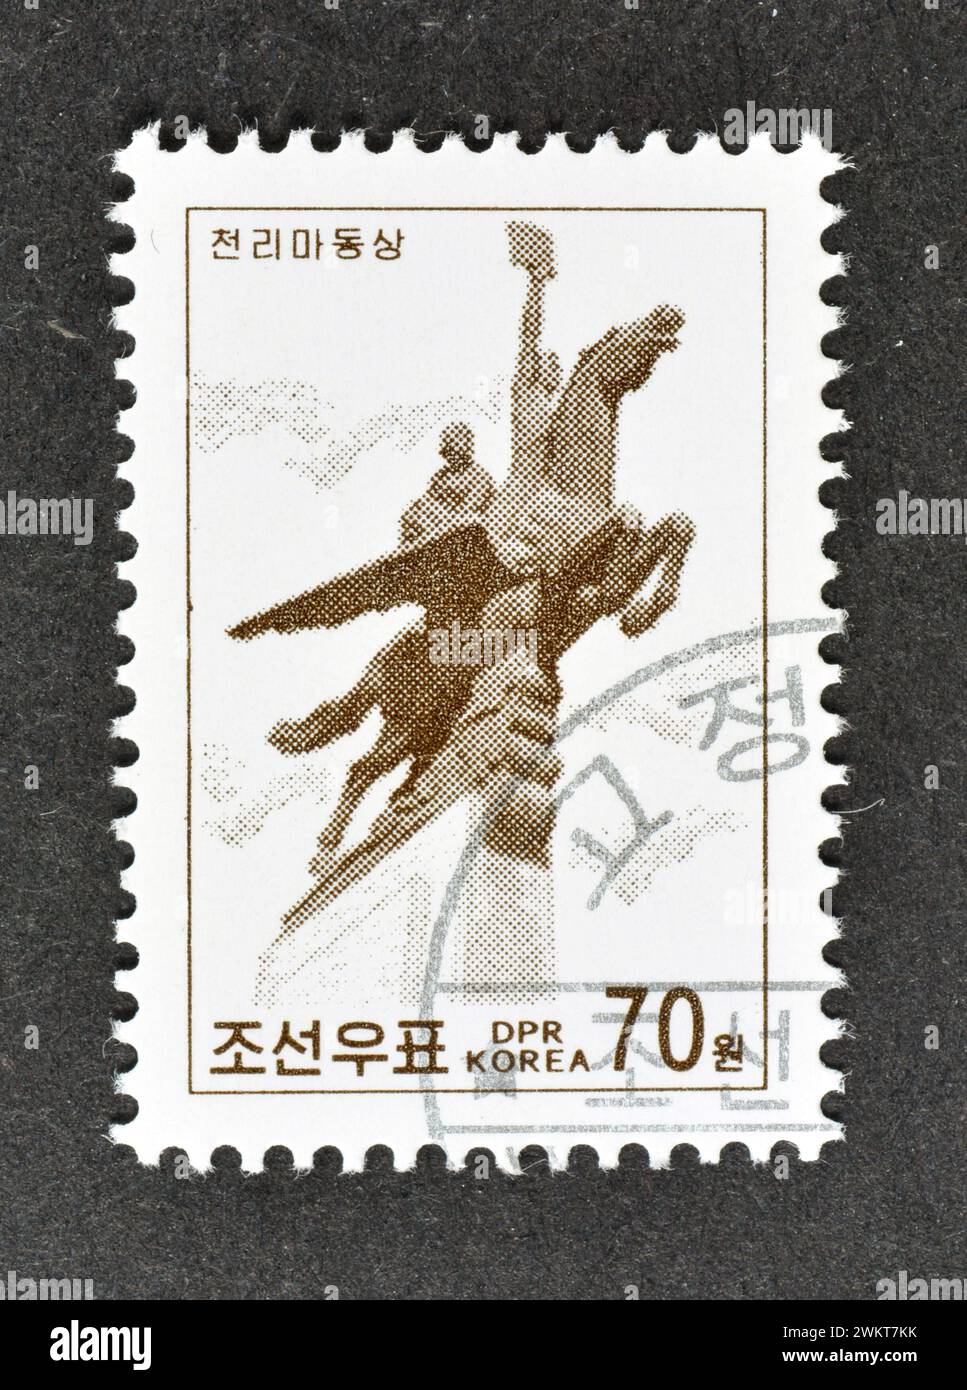 Timbre-poste oblitéré imprimé par la Corée du Nord, qui montre la statue de Chollima à Pyongyang, vers 1998. Banque D'Images